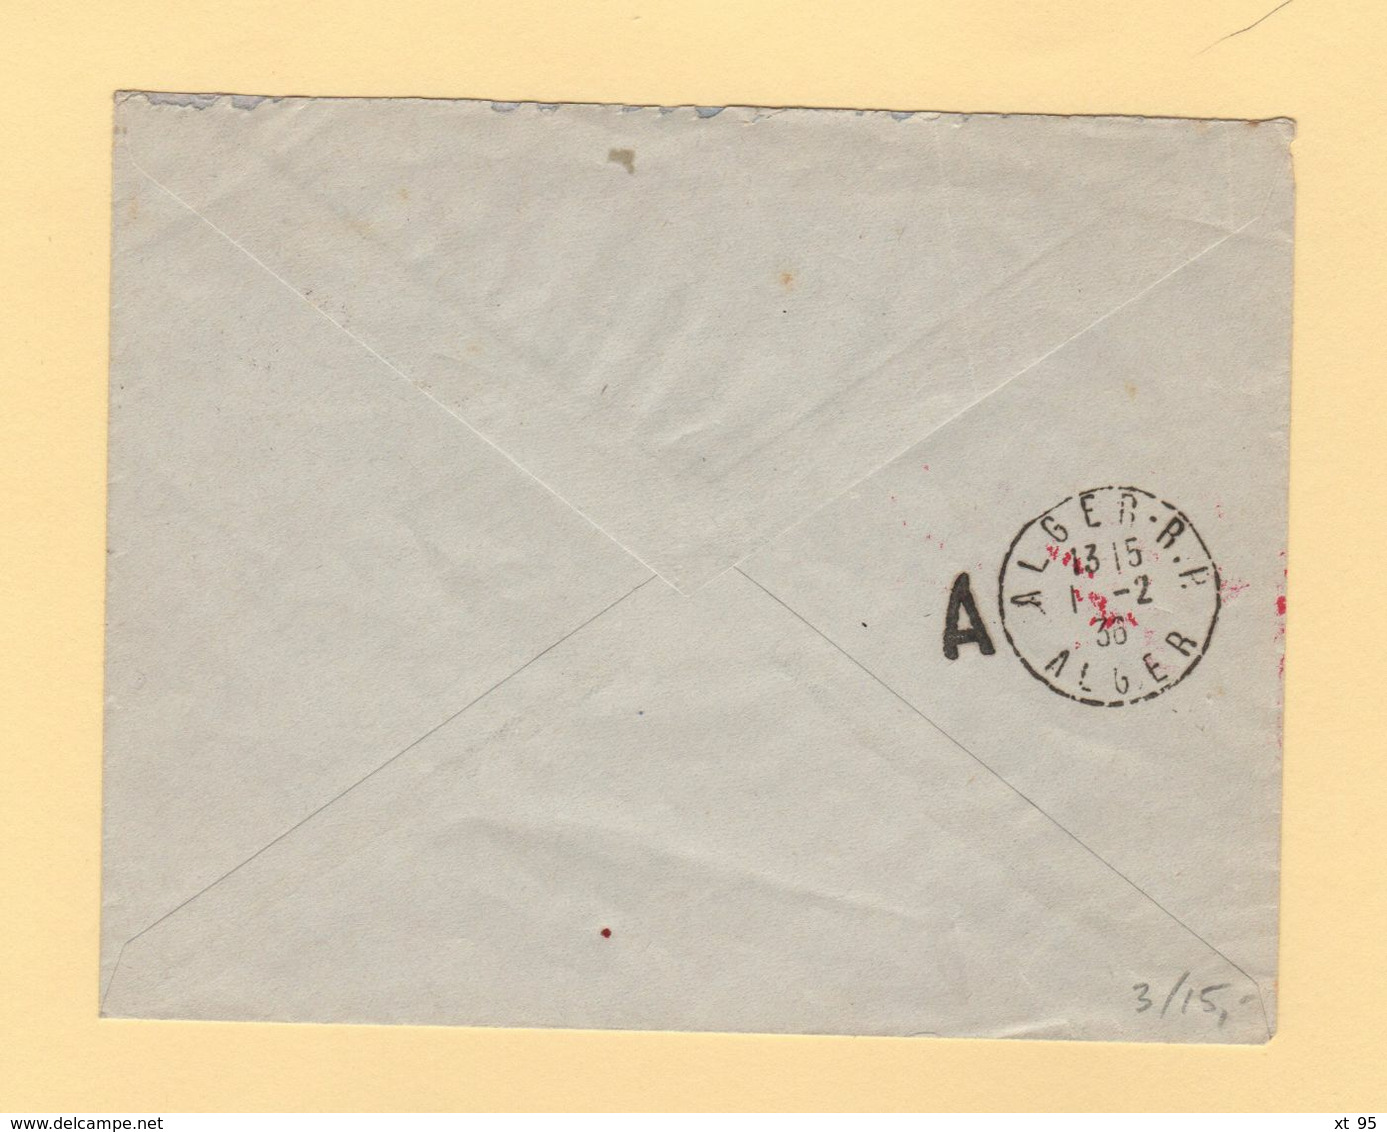 Tunisie - Premier Courrier Postal Aerien Tunisie Algerie - 1er Fevrier 1936 - Airmail